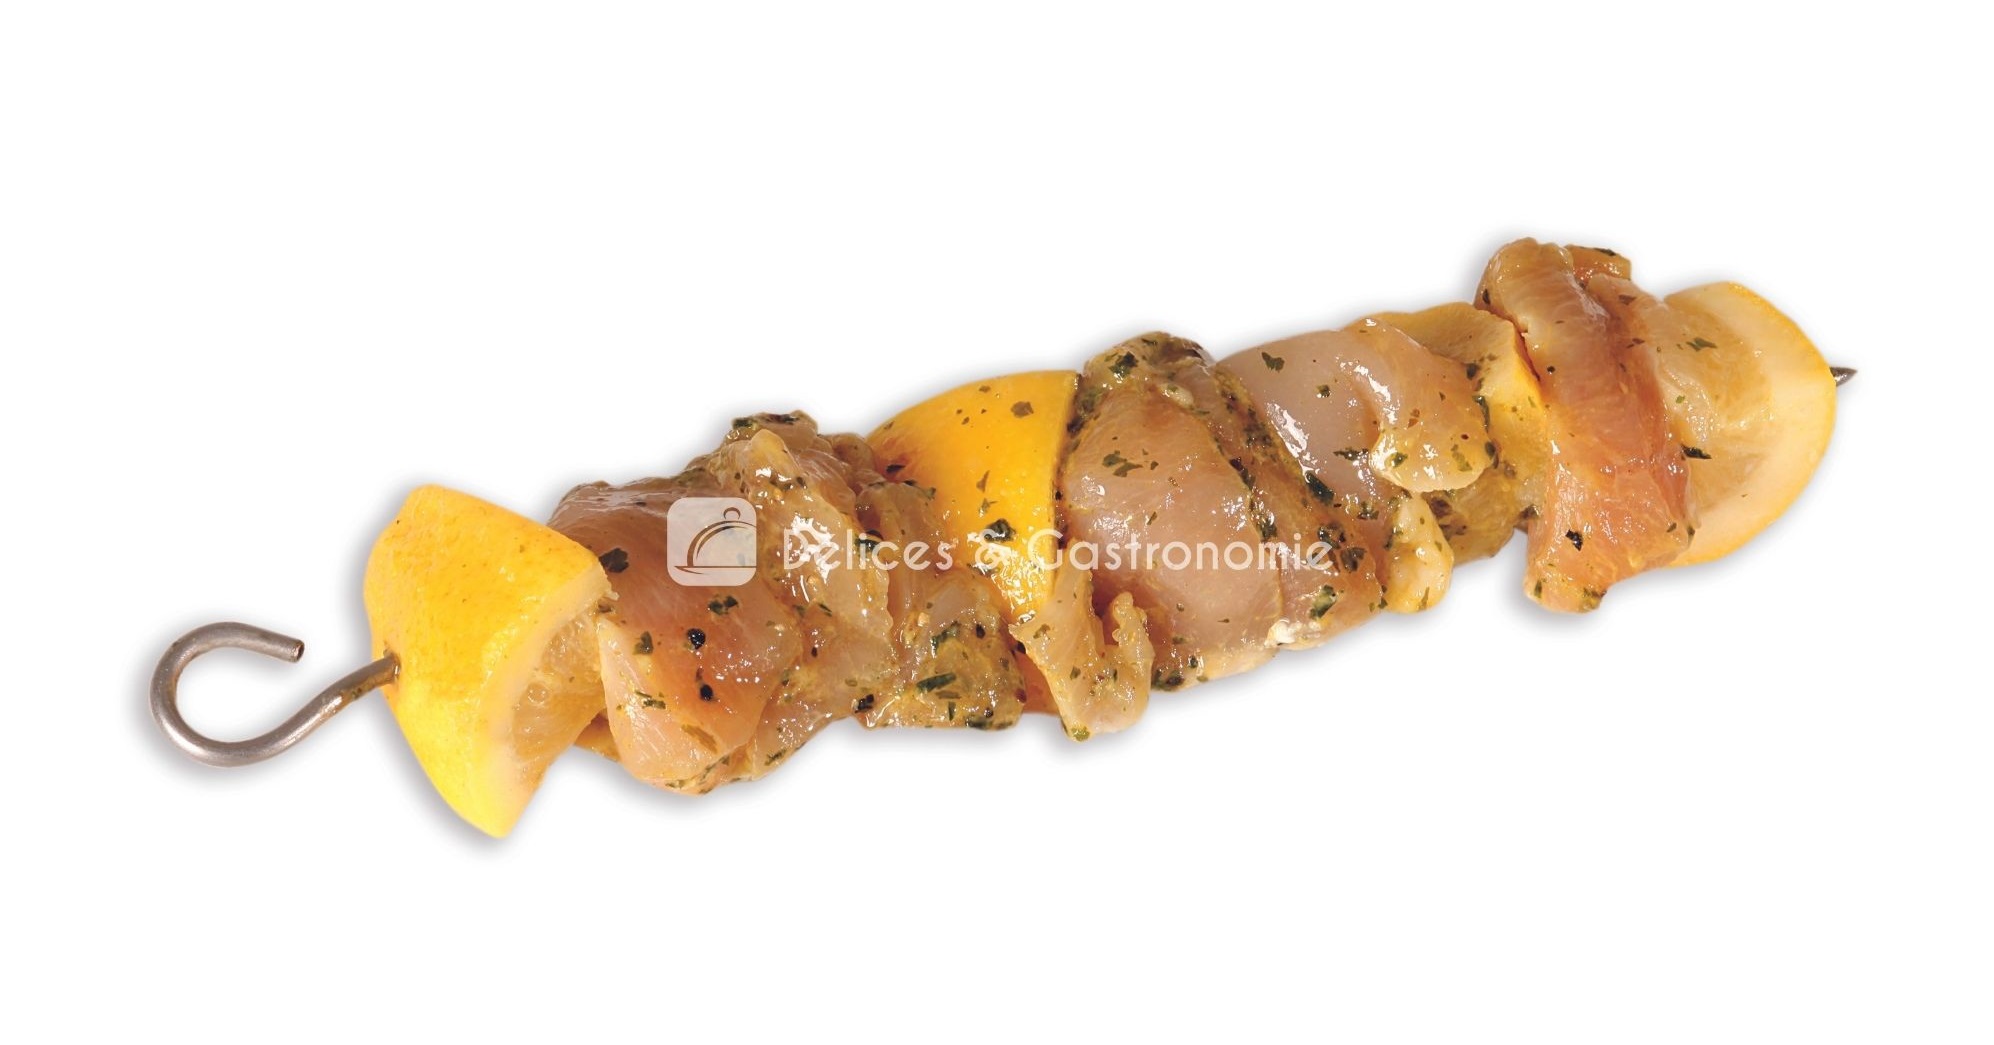 Brochette-de-filet-de-poulet-et-citron-marine-aux-herbes-10286-RBH-Delices-Gastronomie-1